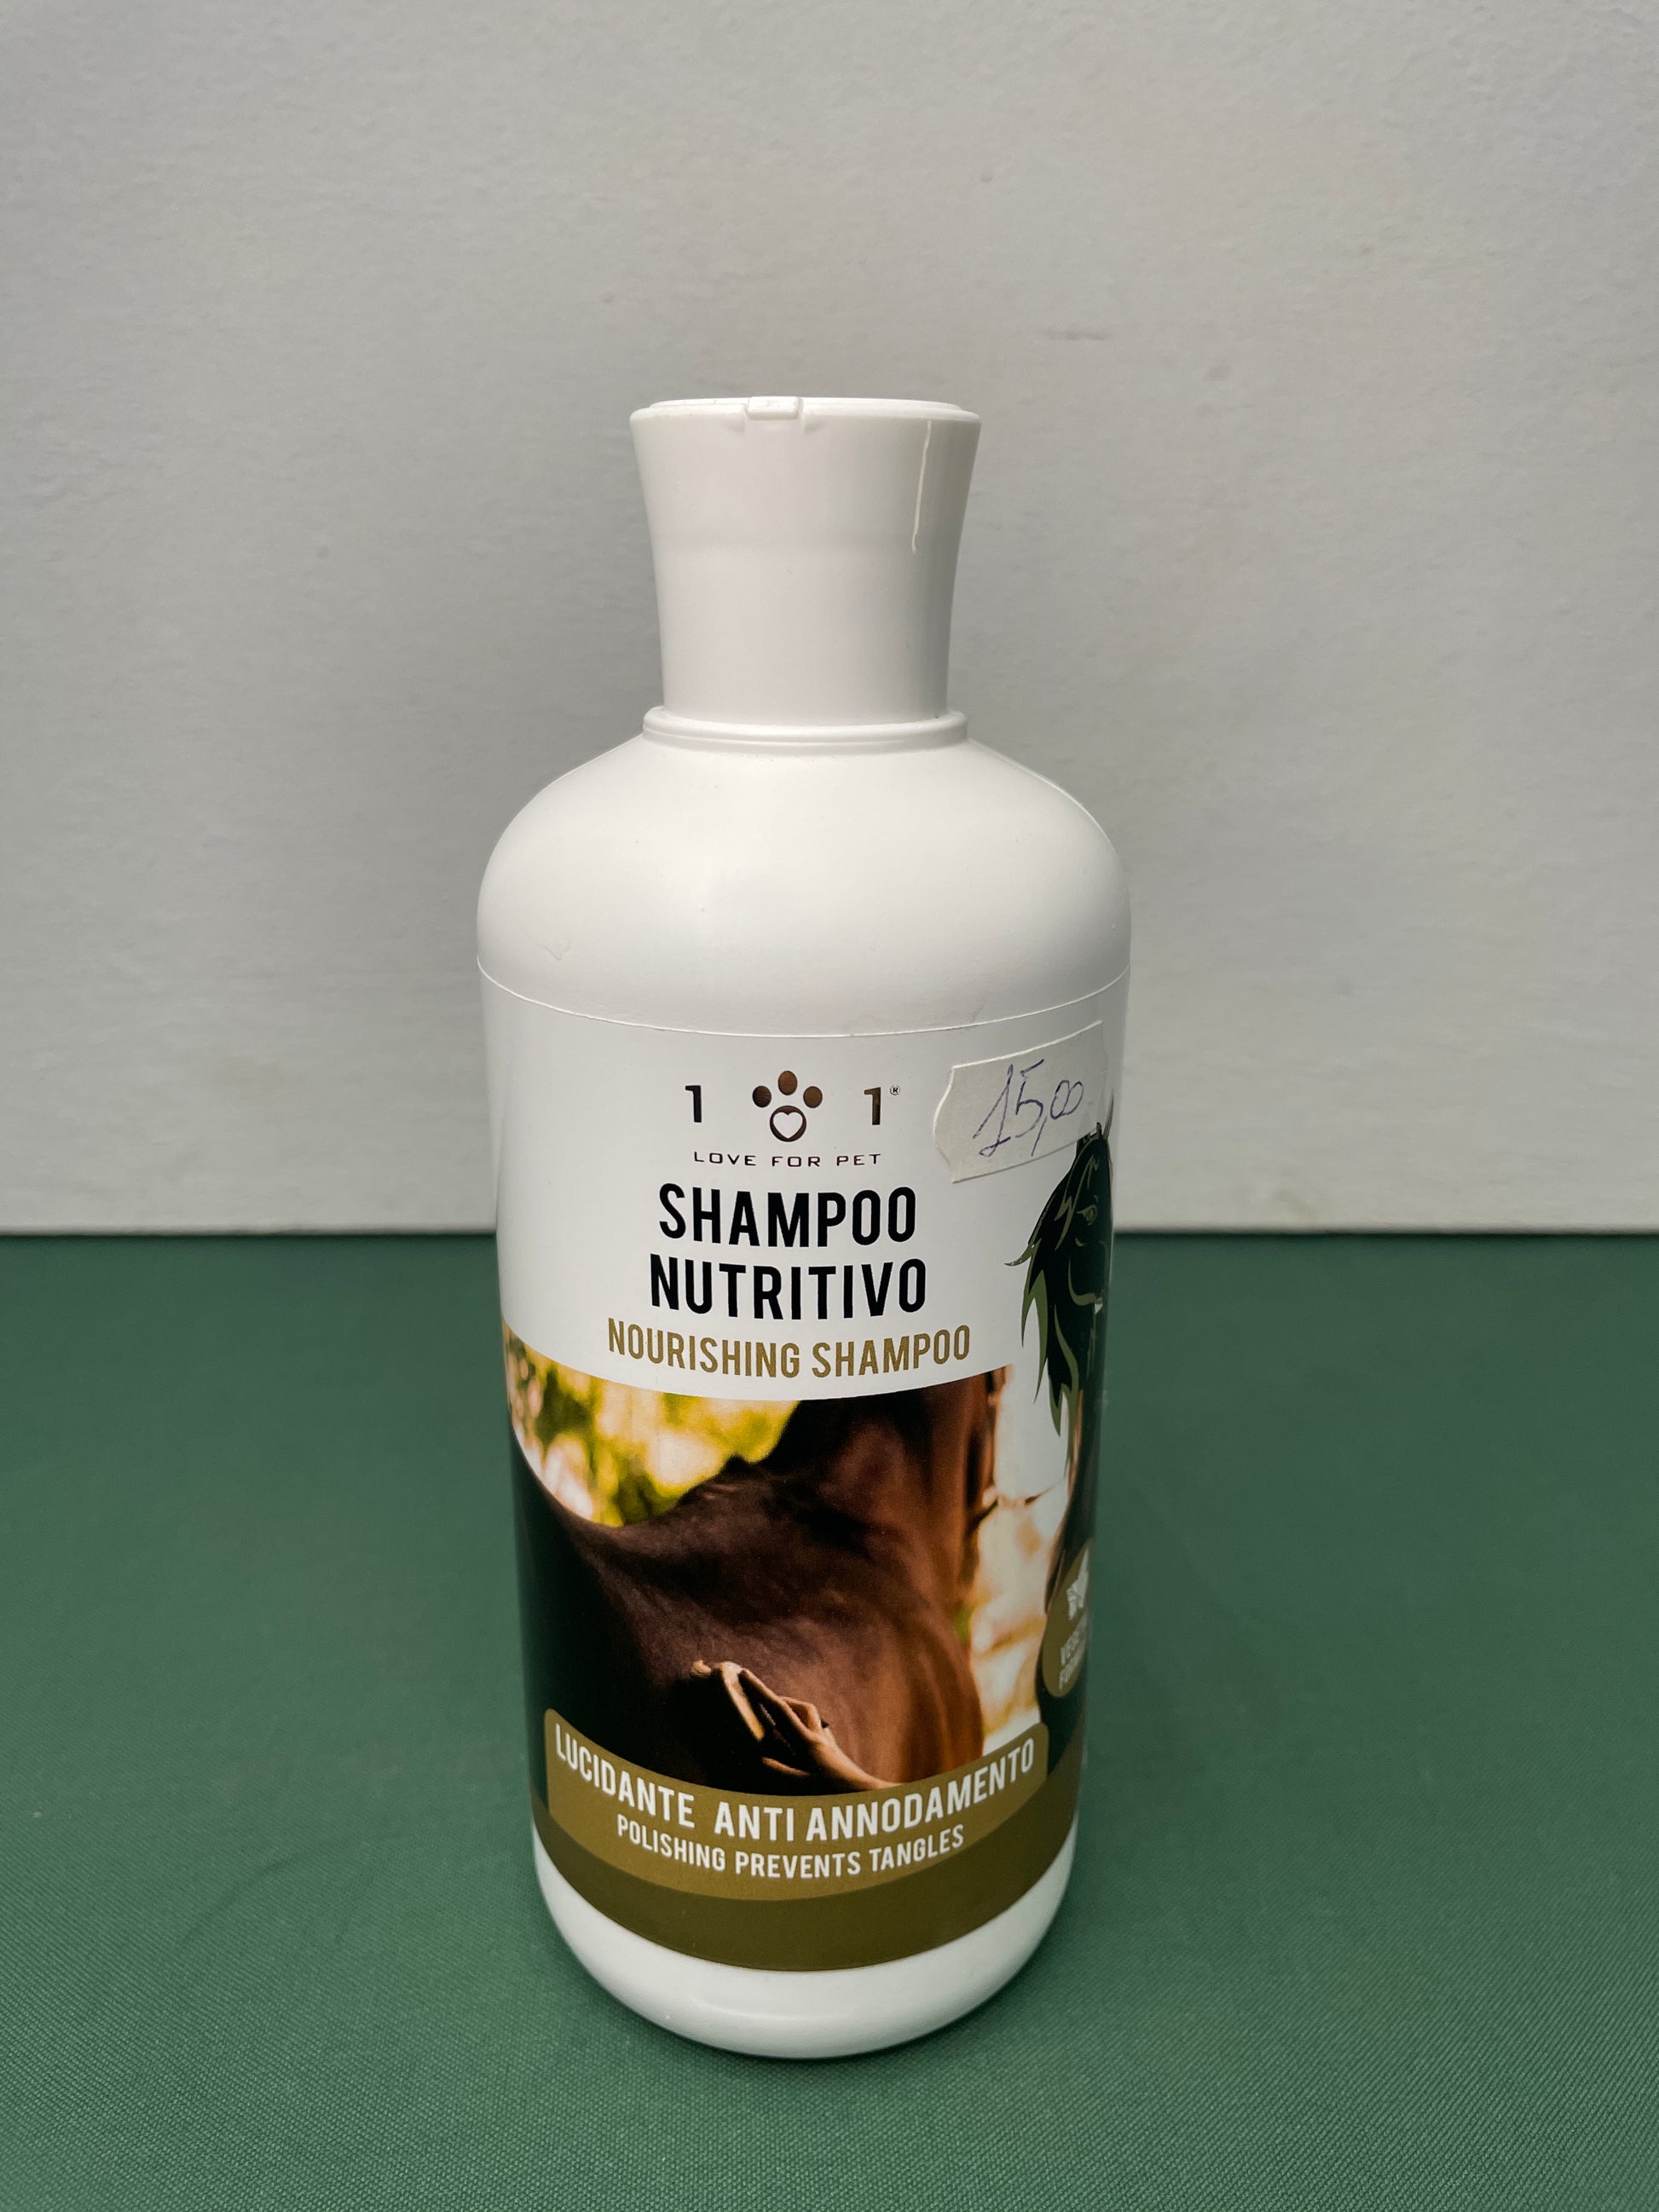 Shampoo nutritivo per la criniera dei cavalli